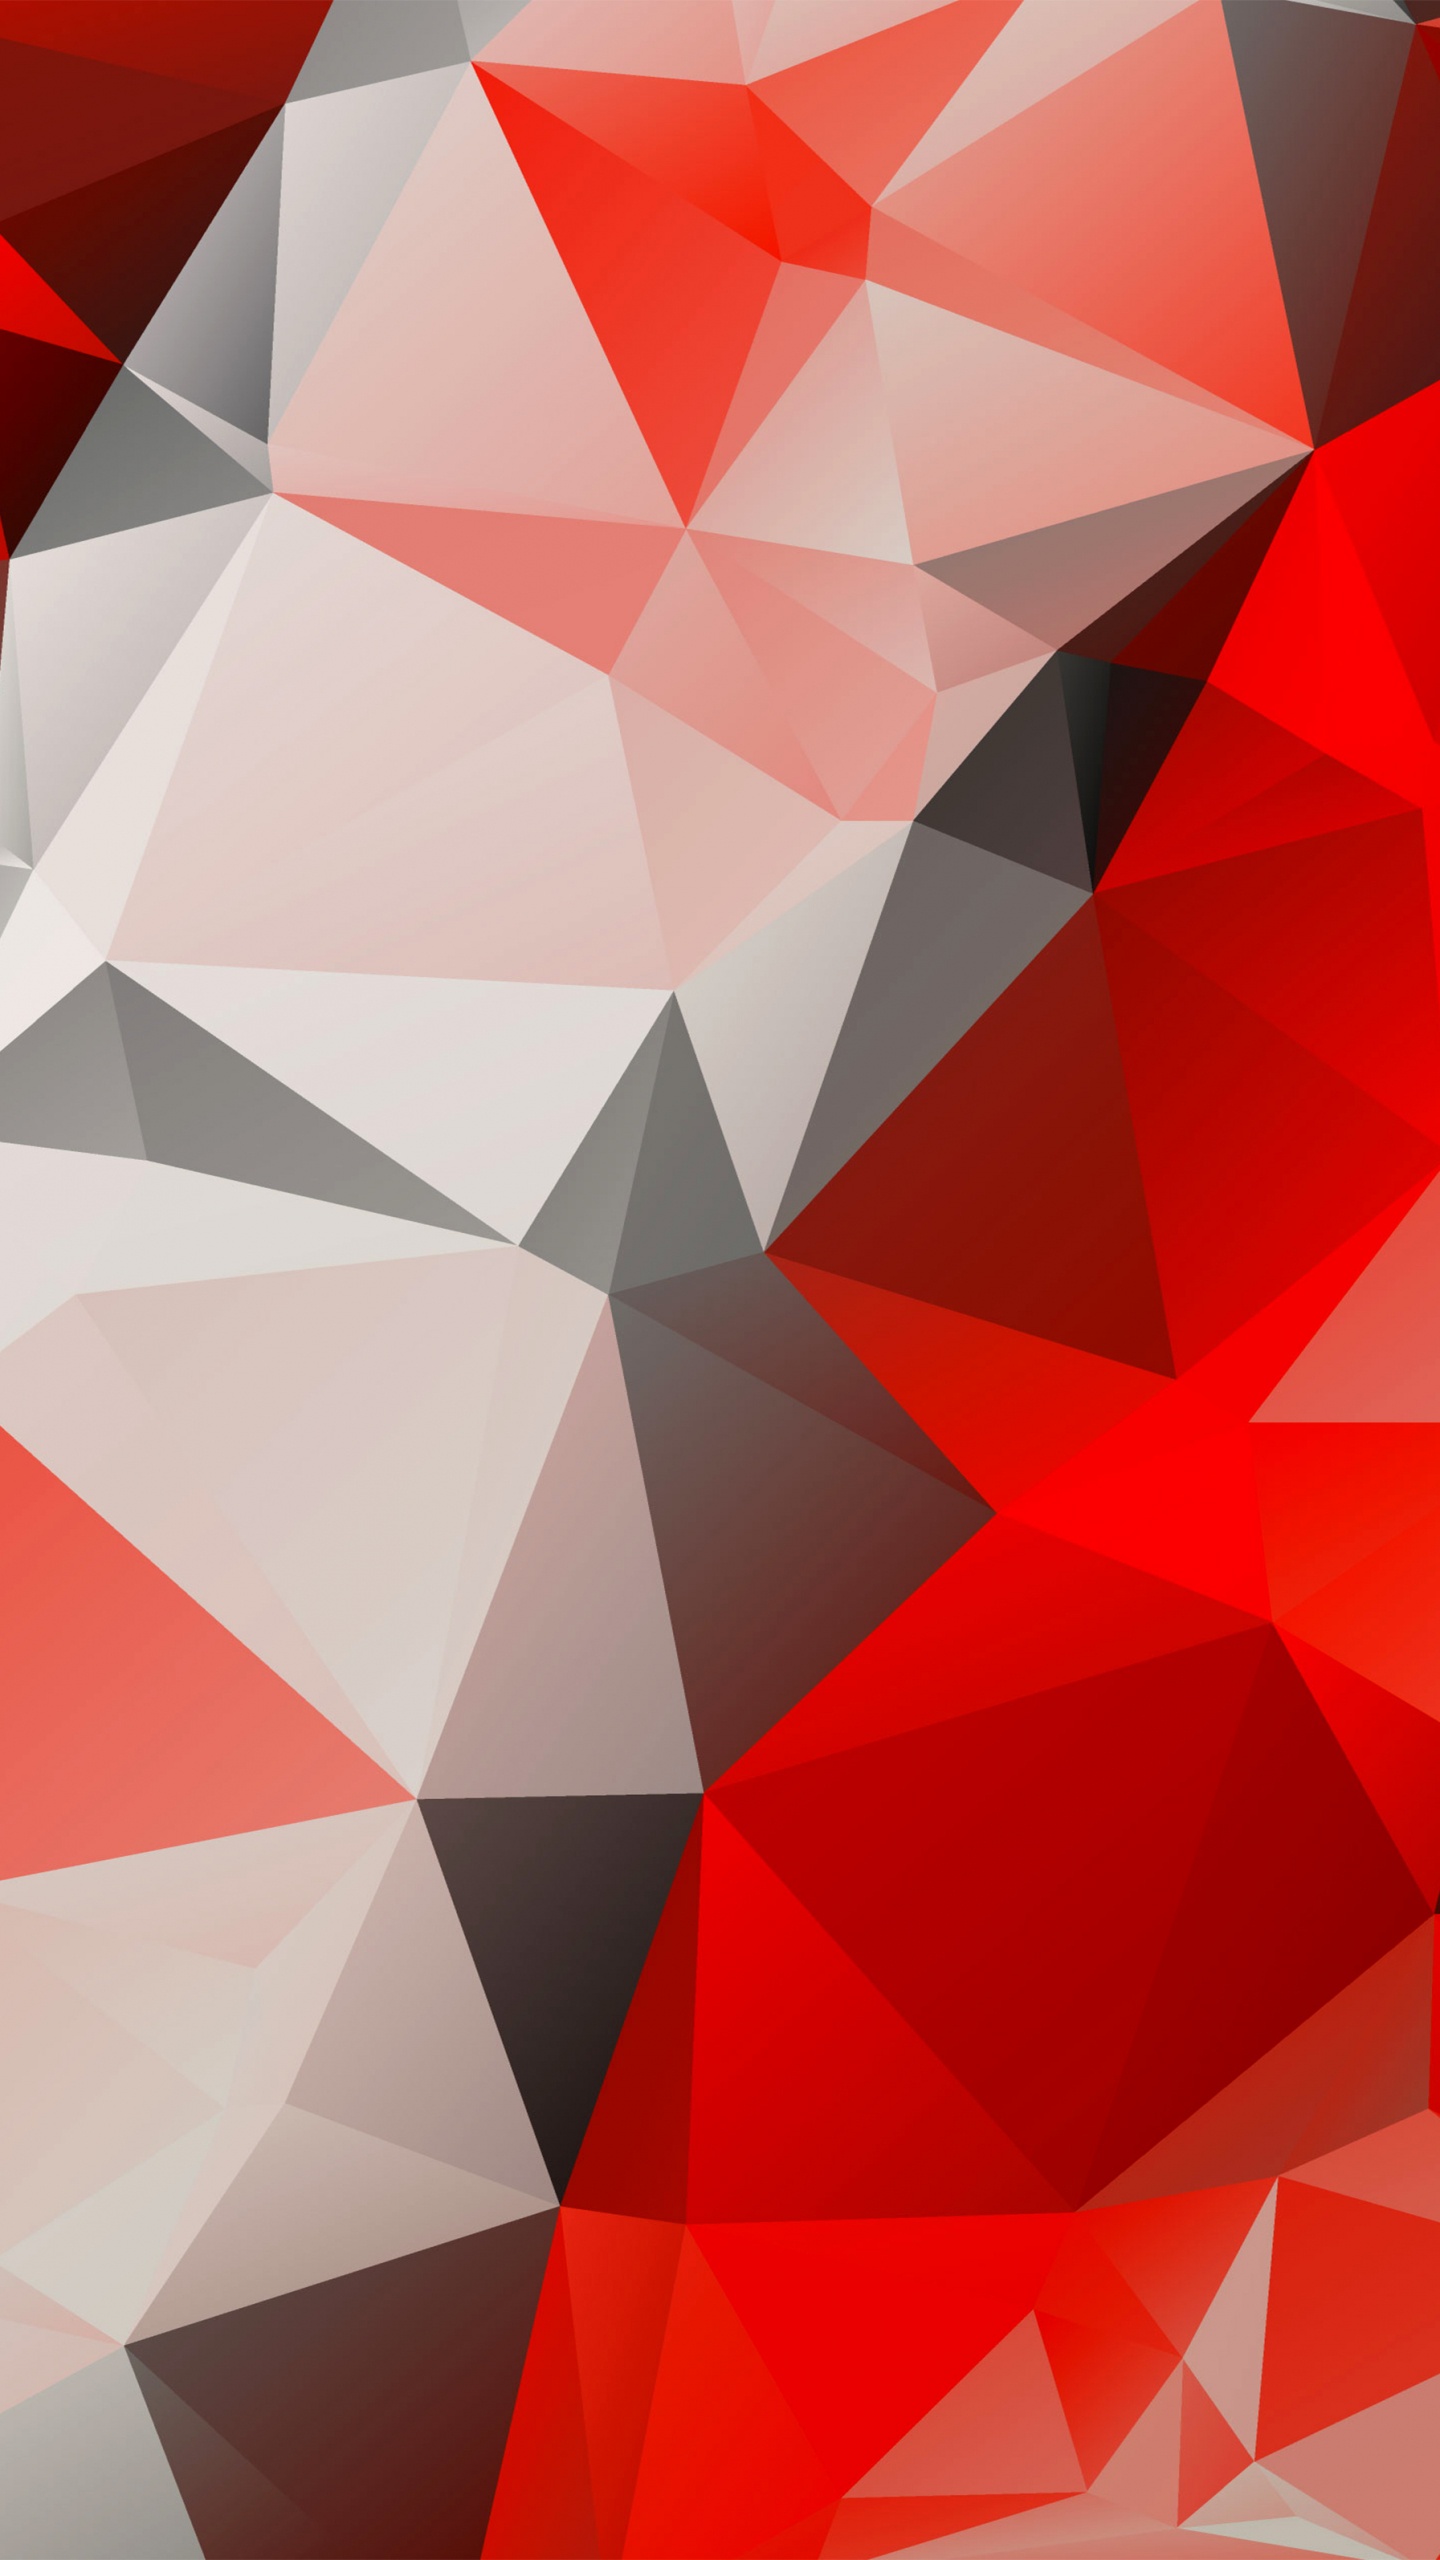 多边形, 红色的, 三角形, 对称, 矢量图形 壁纸 1440x2560 允许